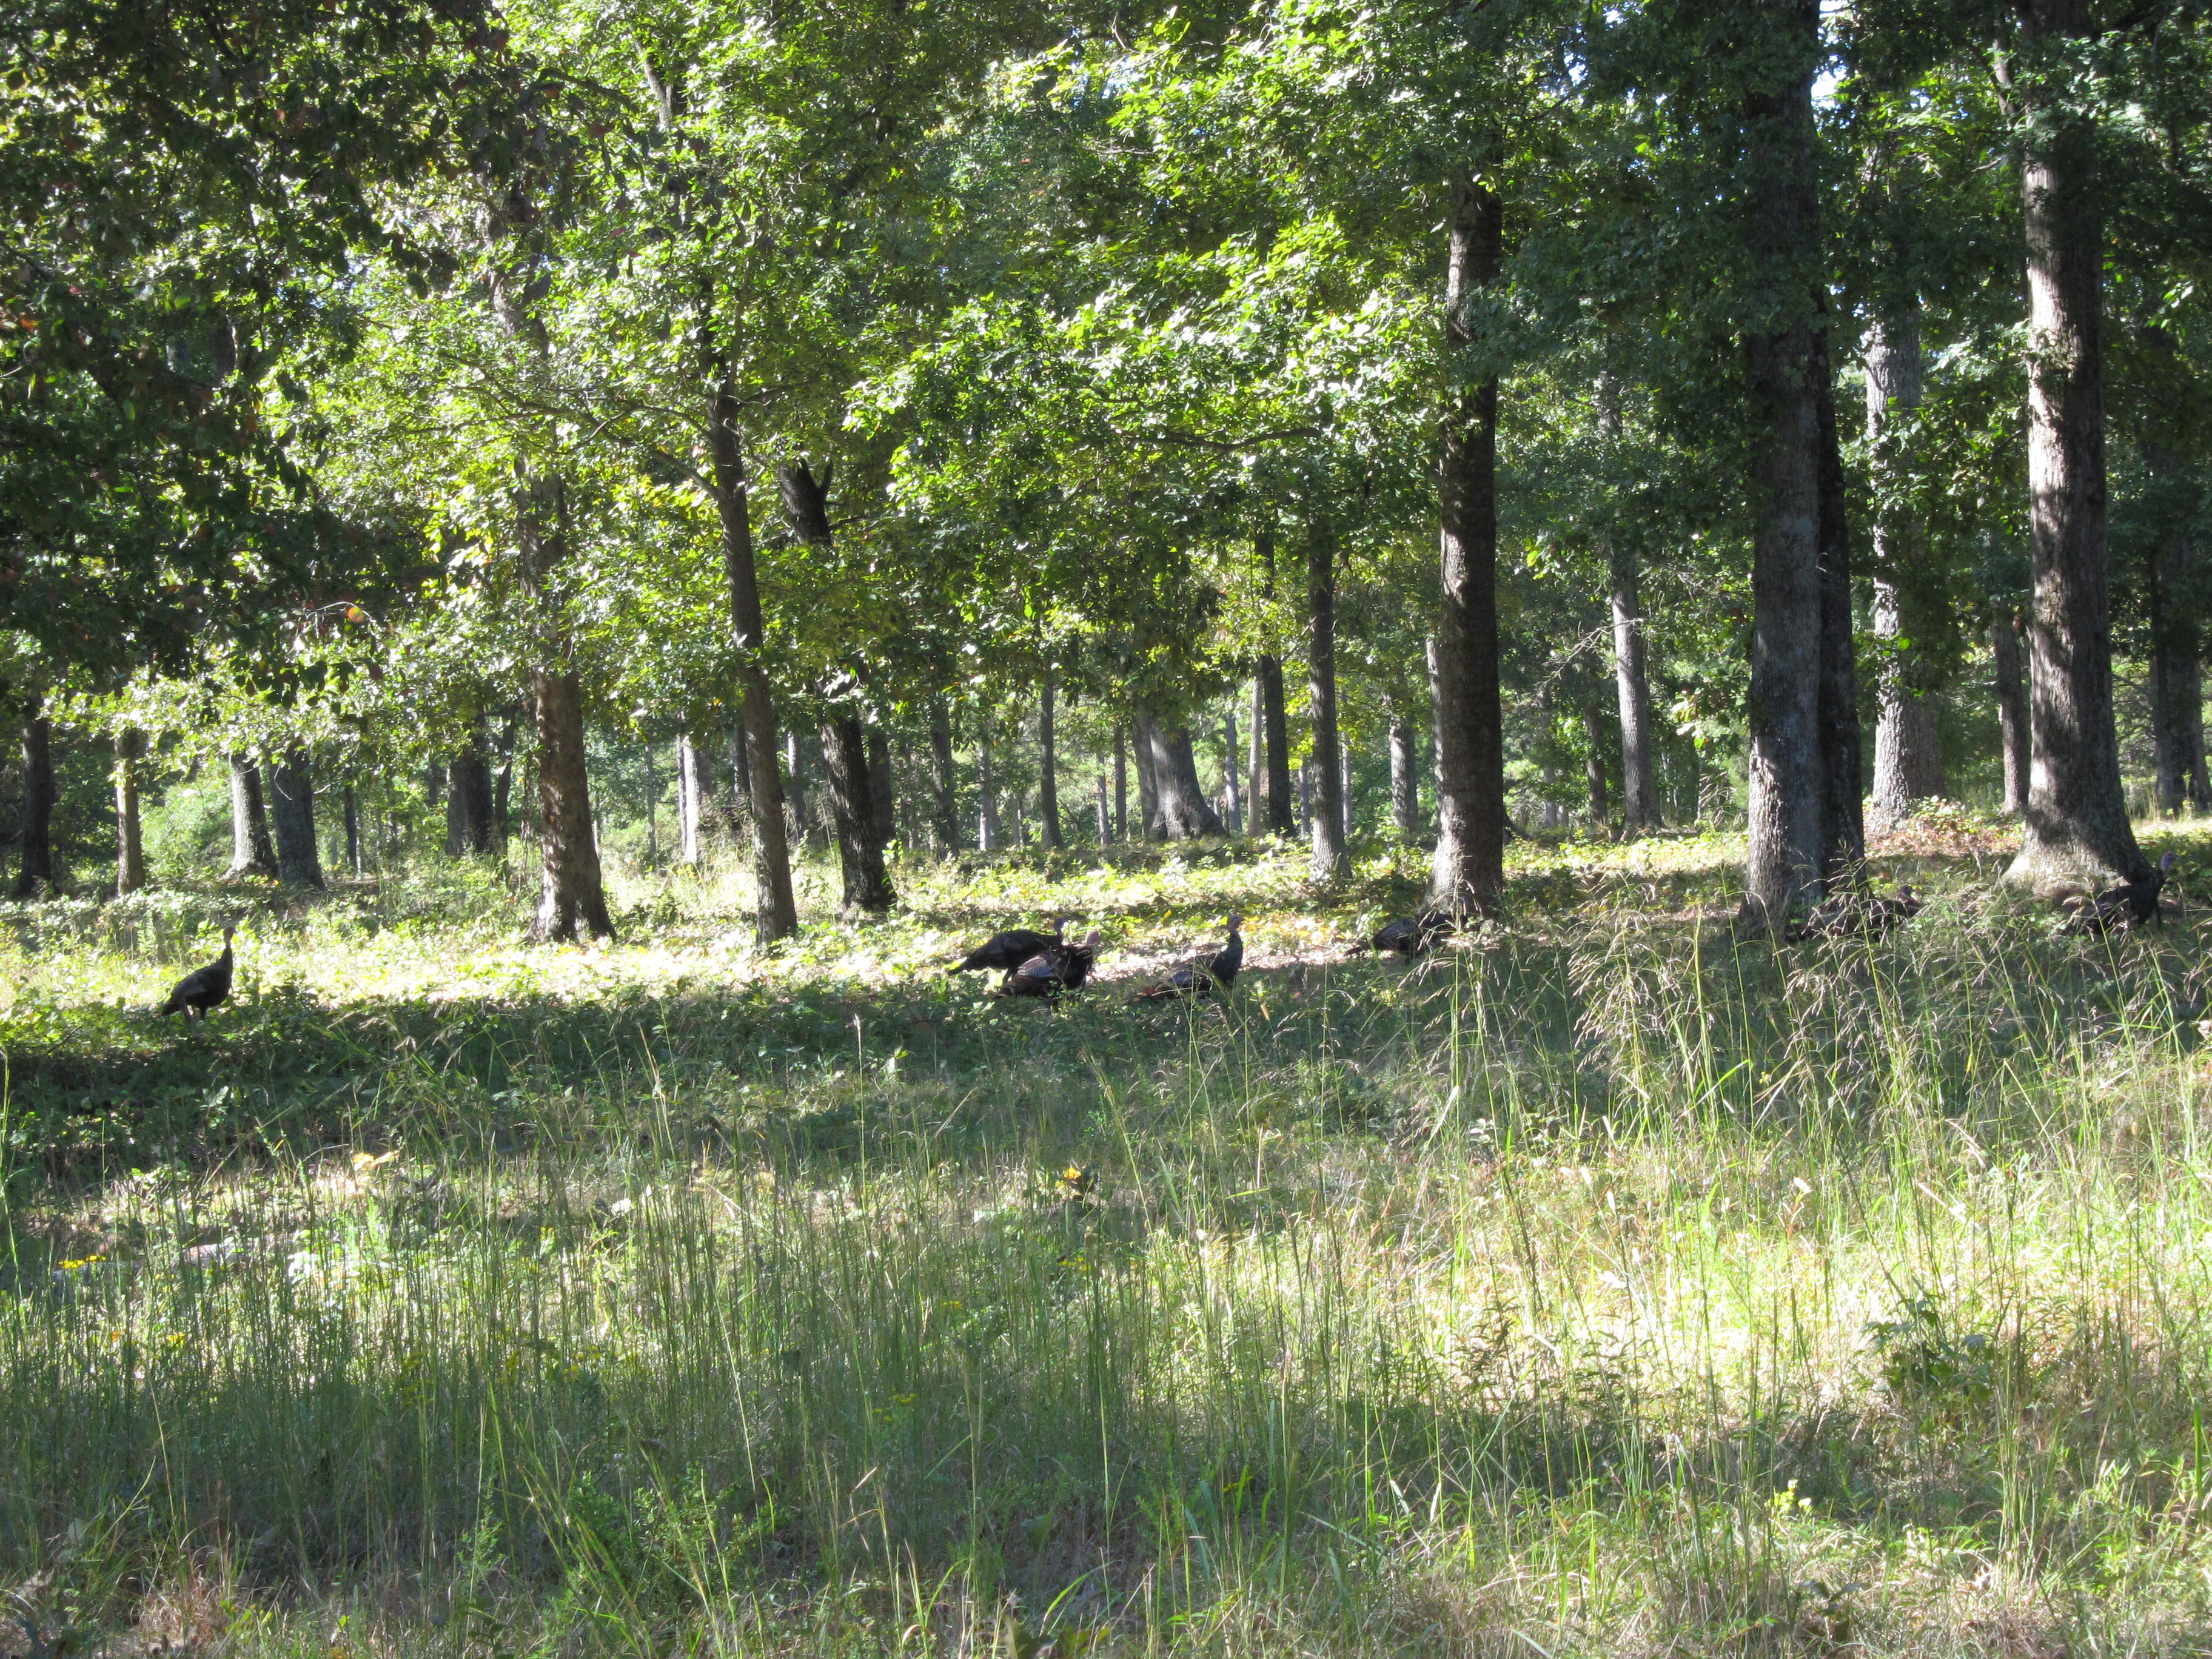 Wild Turkeys at Cowpens Battlefield